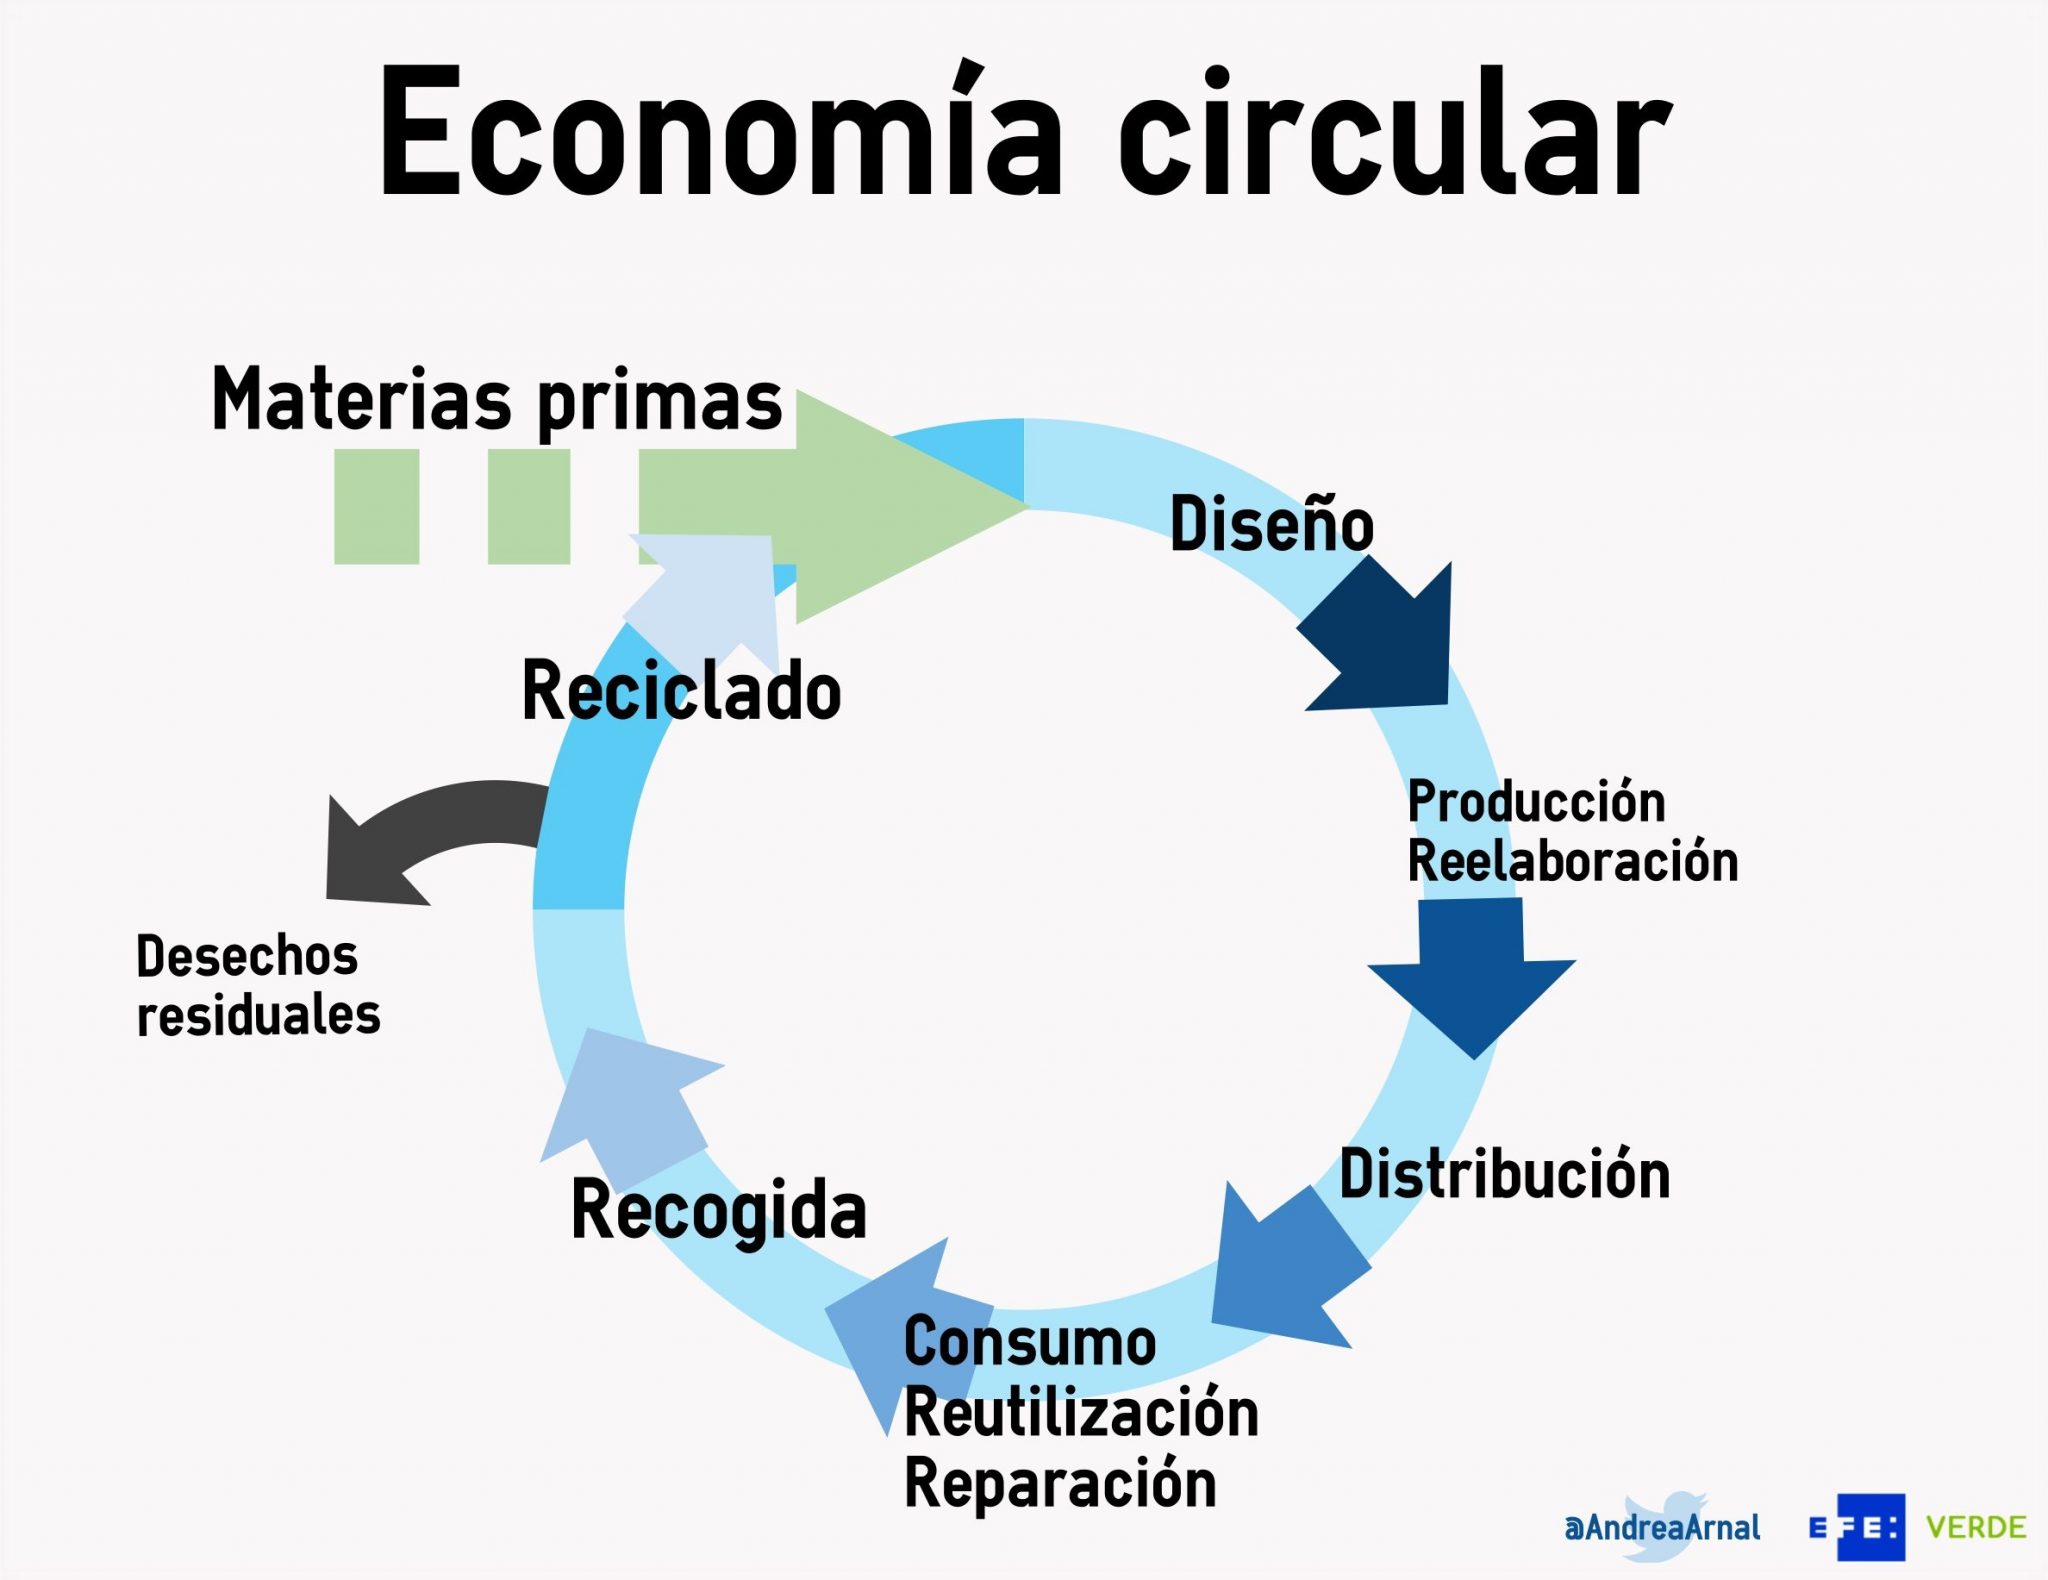 #Economiacircular @deunvistazo en @efeverde por @andreaarnal